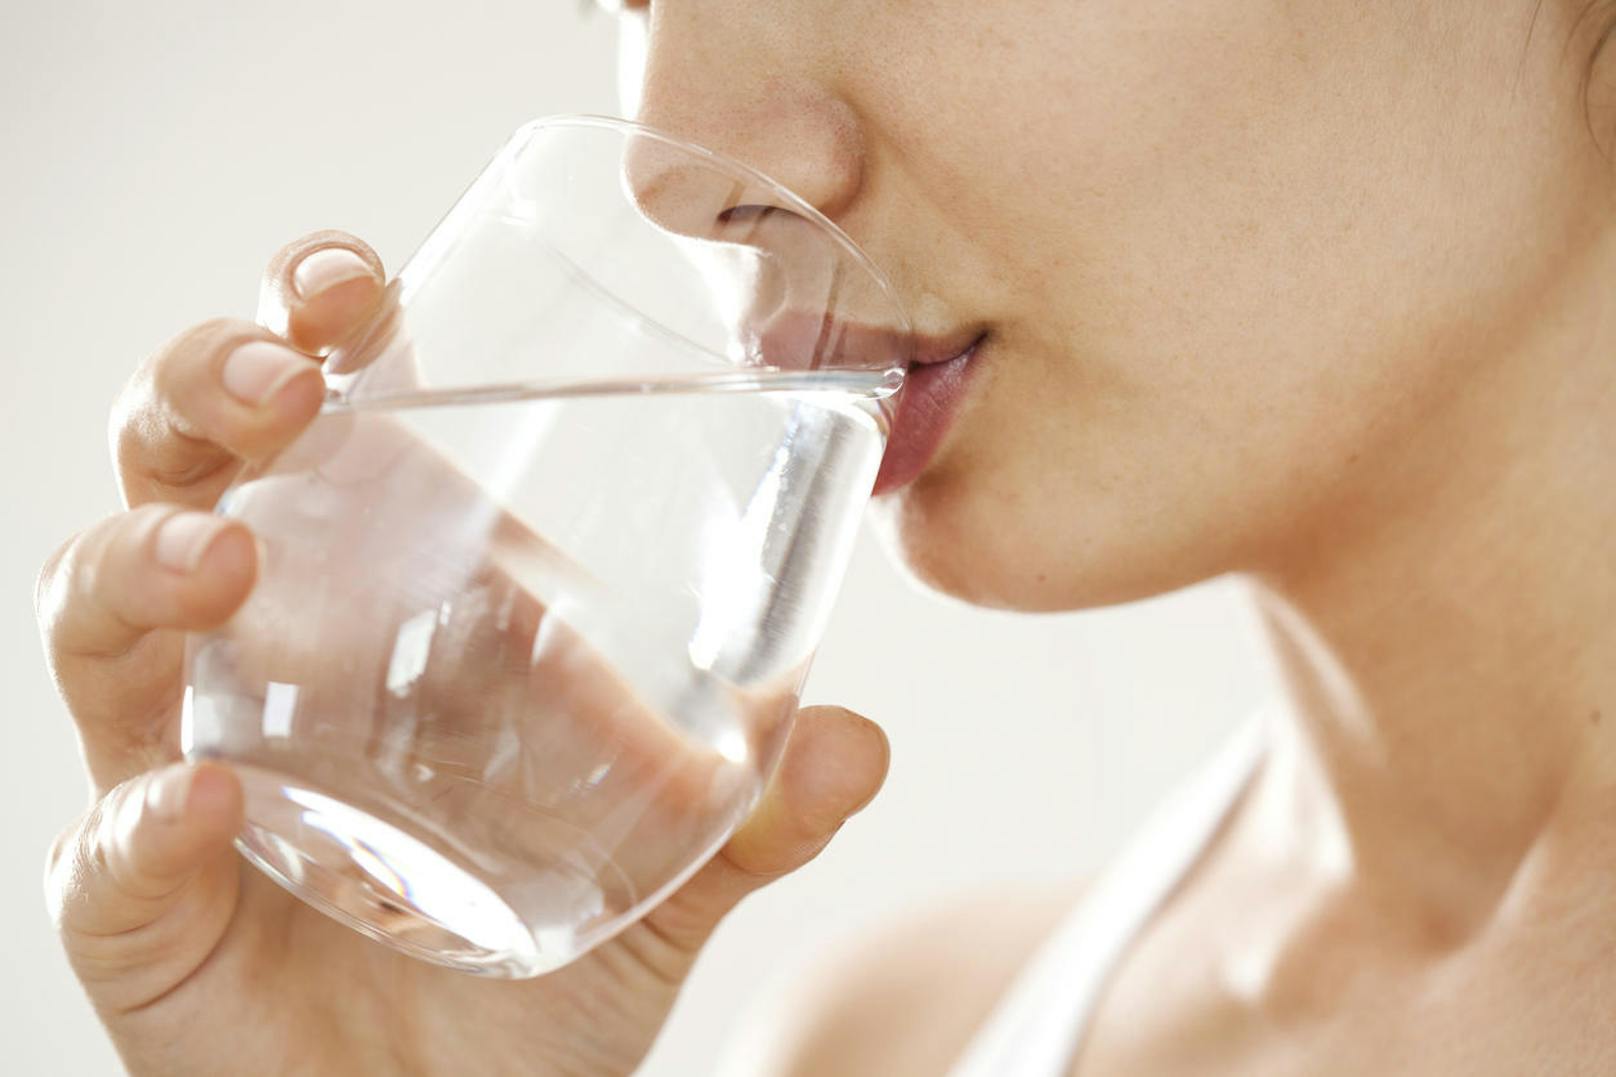 8 Gläser Wasser pro Tag sollte man konsumieren, so besagt die Faustregel. 